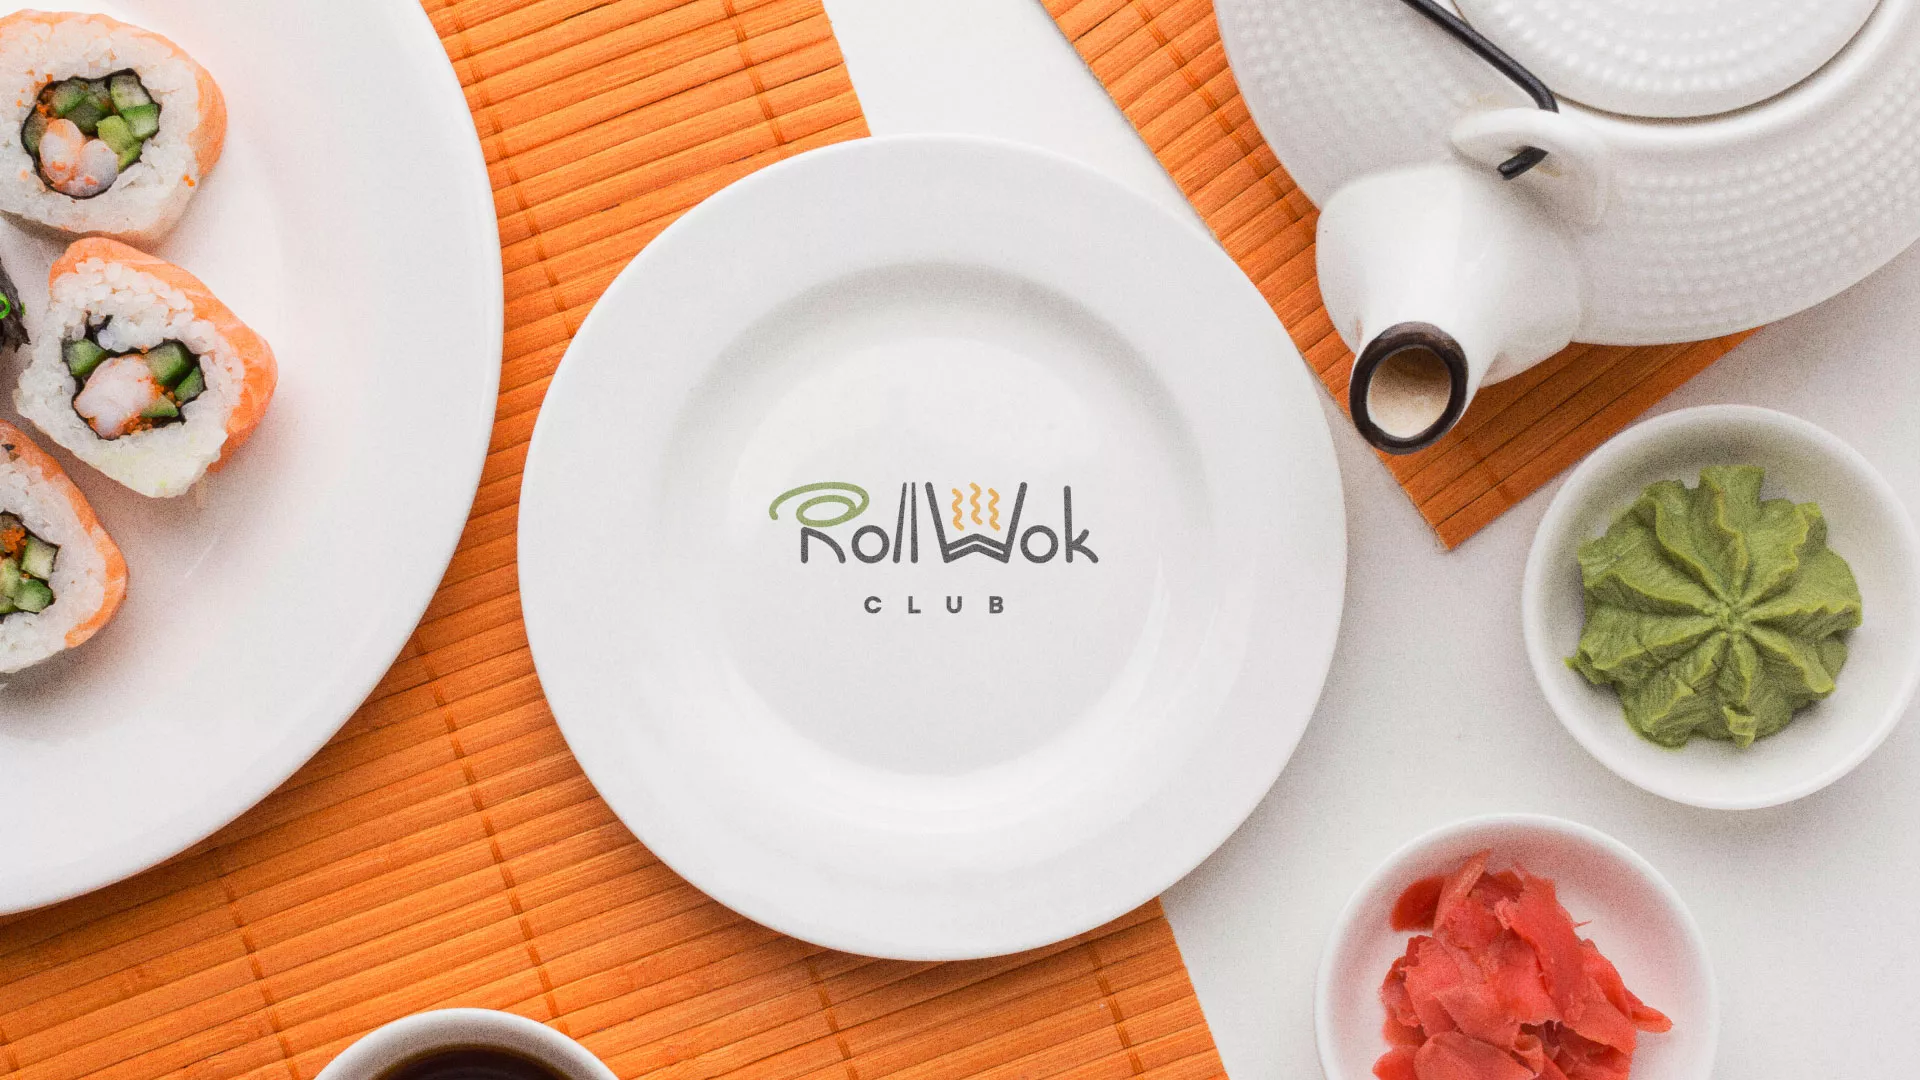 Разработка логотипа и фирменного стиля суши-бара «Roll Wok Club» в Топках